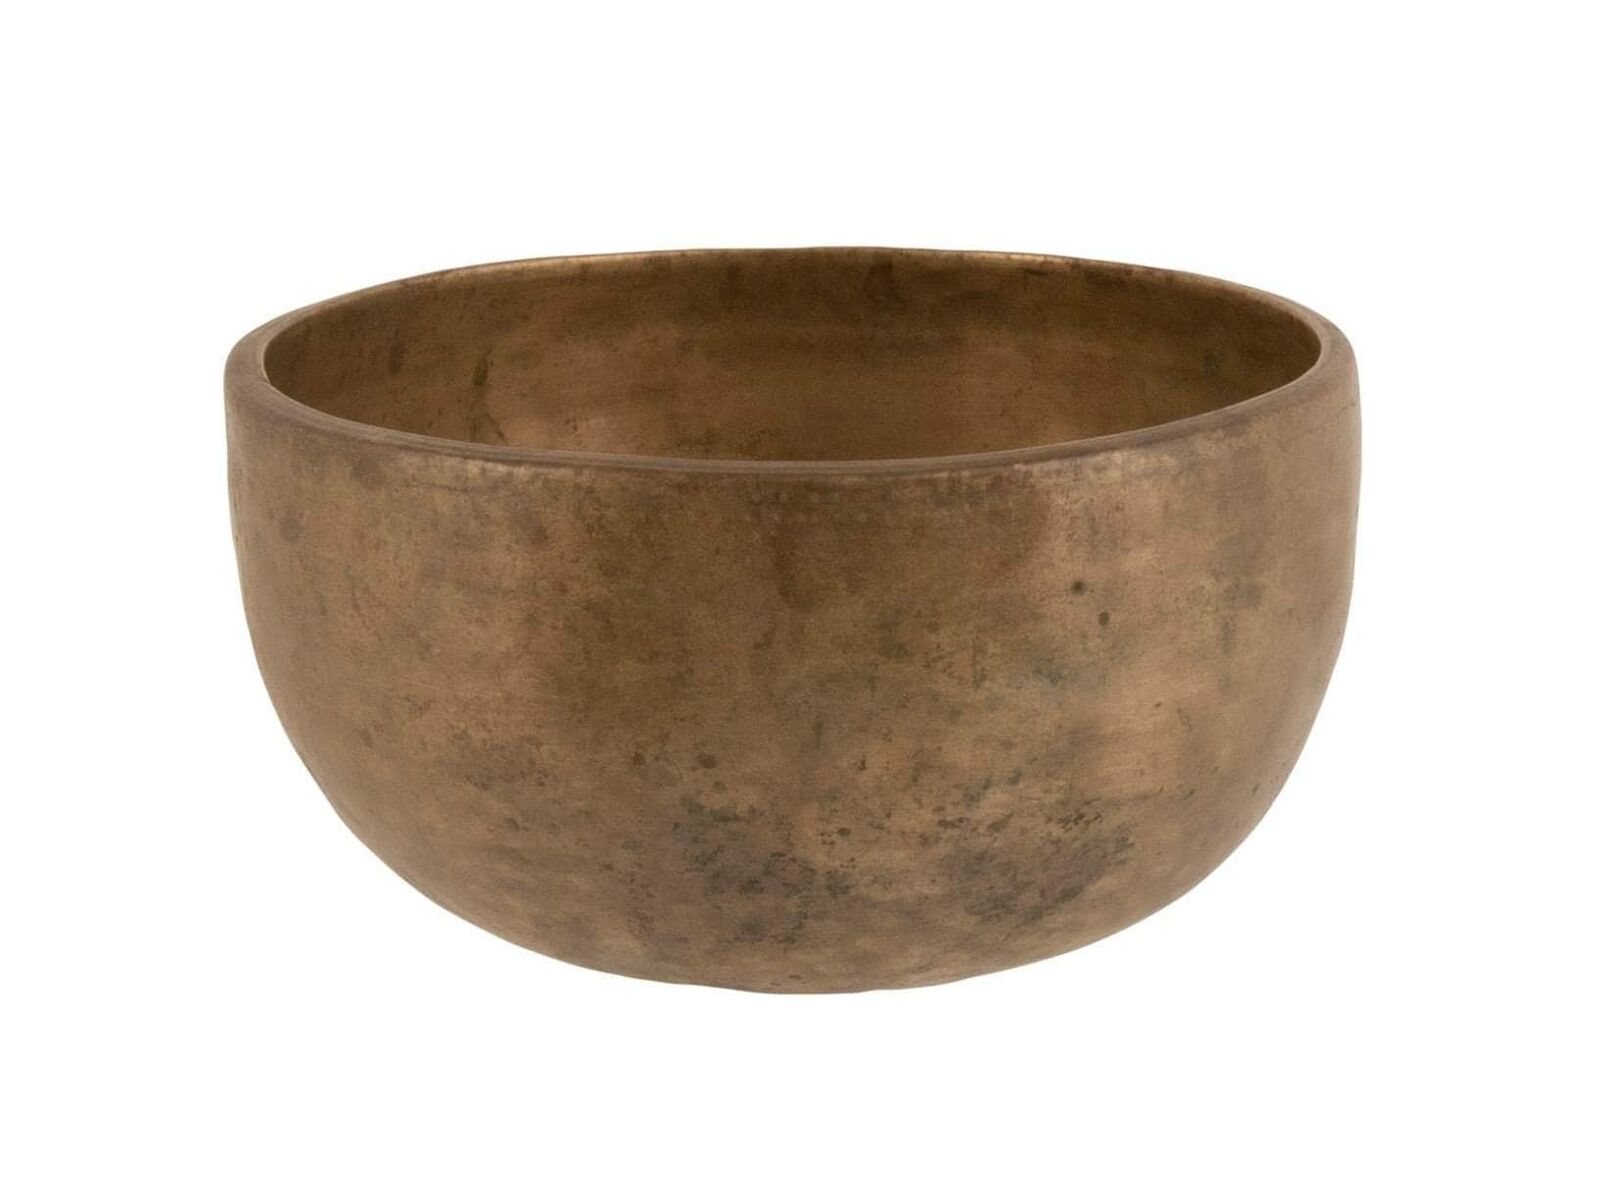 Rare Super Thick Antique Singing Bowl Thadobati Tc#248 8.1/2”x4.3/8” (21.5x11cm)